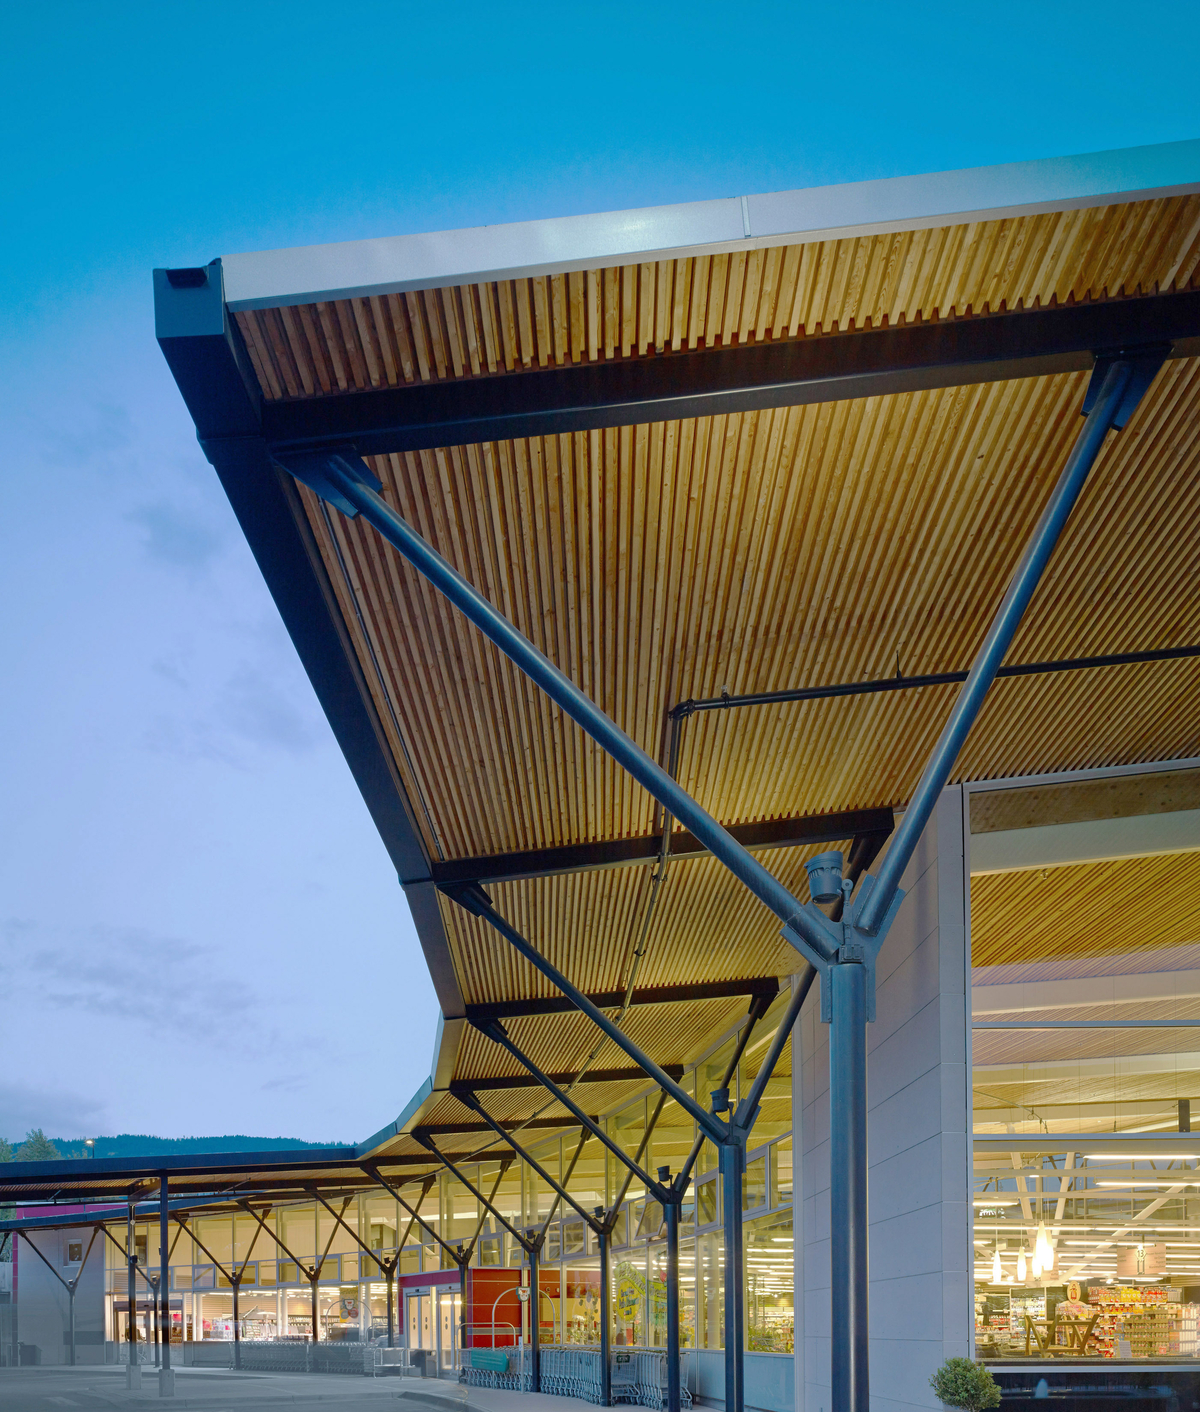 Askews超市正面的室外傍晚视图，展示了钉层压木材(NLT)和钢的覆盖混合走道，沿着两层低层玻璃店面运行